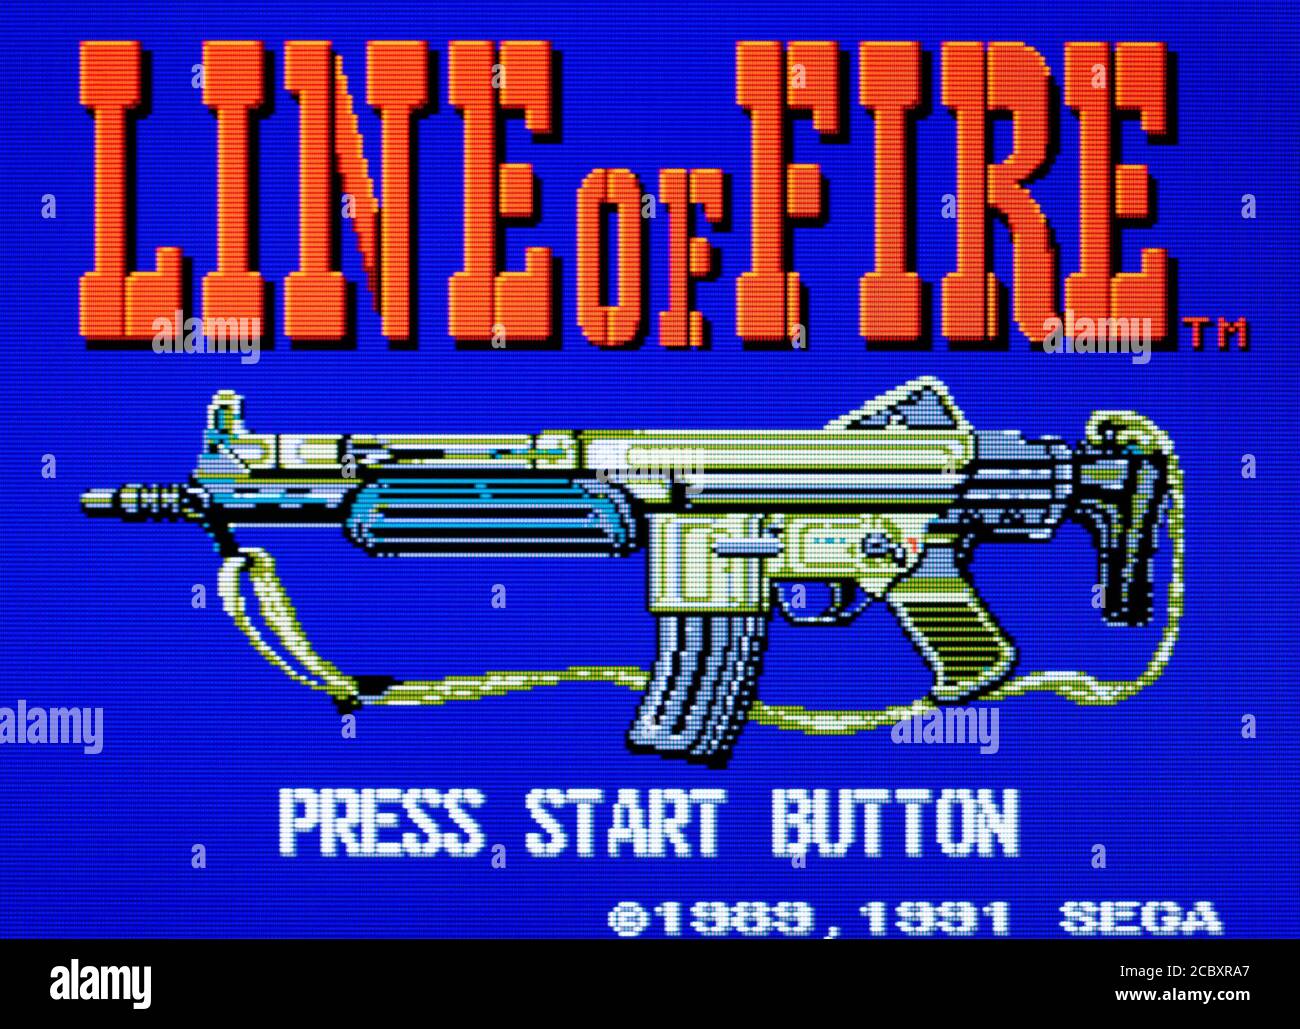 Ligne de feu - système principal Sega - SMS - usage éditorial uniquement Banque D'Images